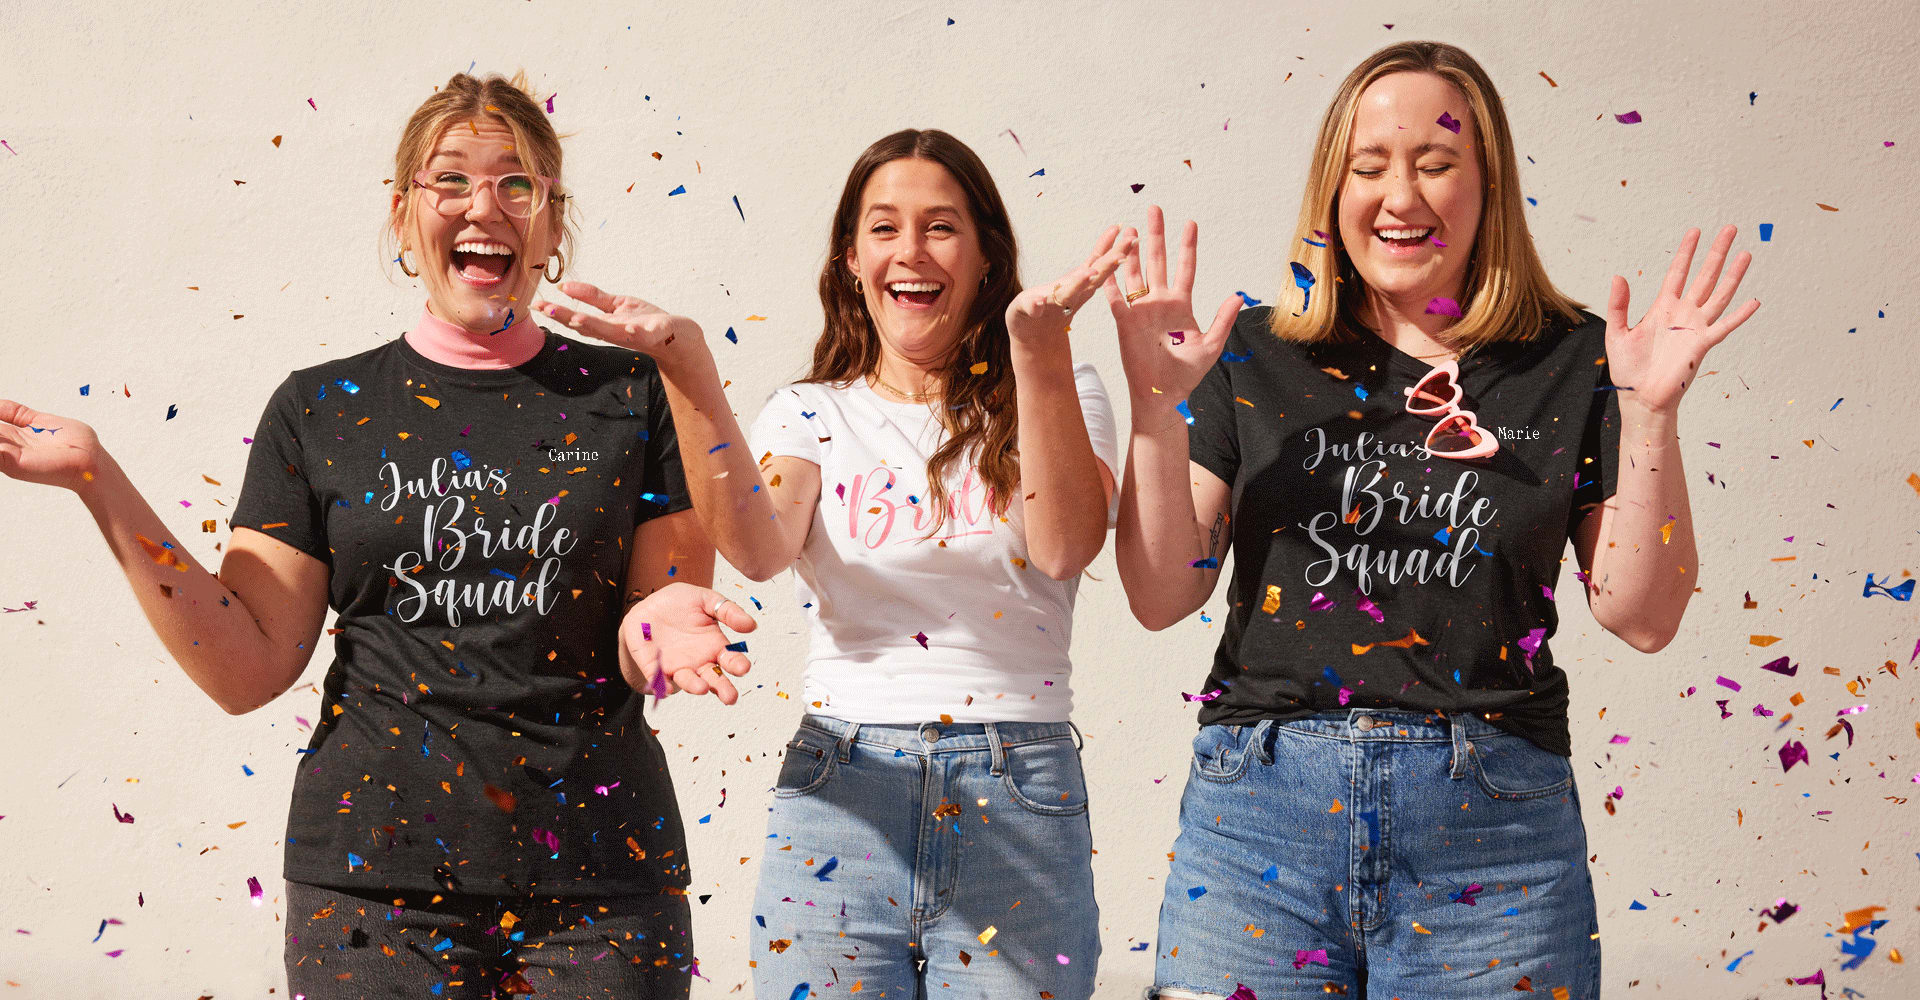 Des jeunes filles enjouées vêtues de t-shirts ajustés pour femme fruit of the loom® assortis en train de s’amuser avec des confettis colorés lors d’une fête de mariage.